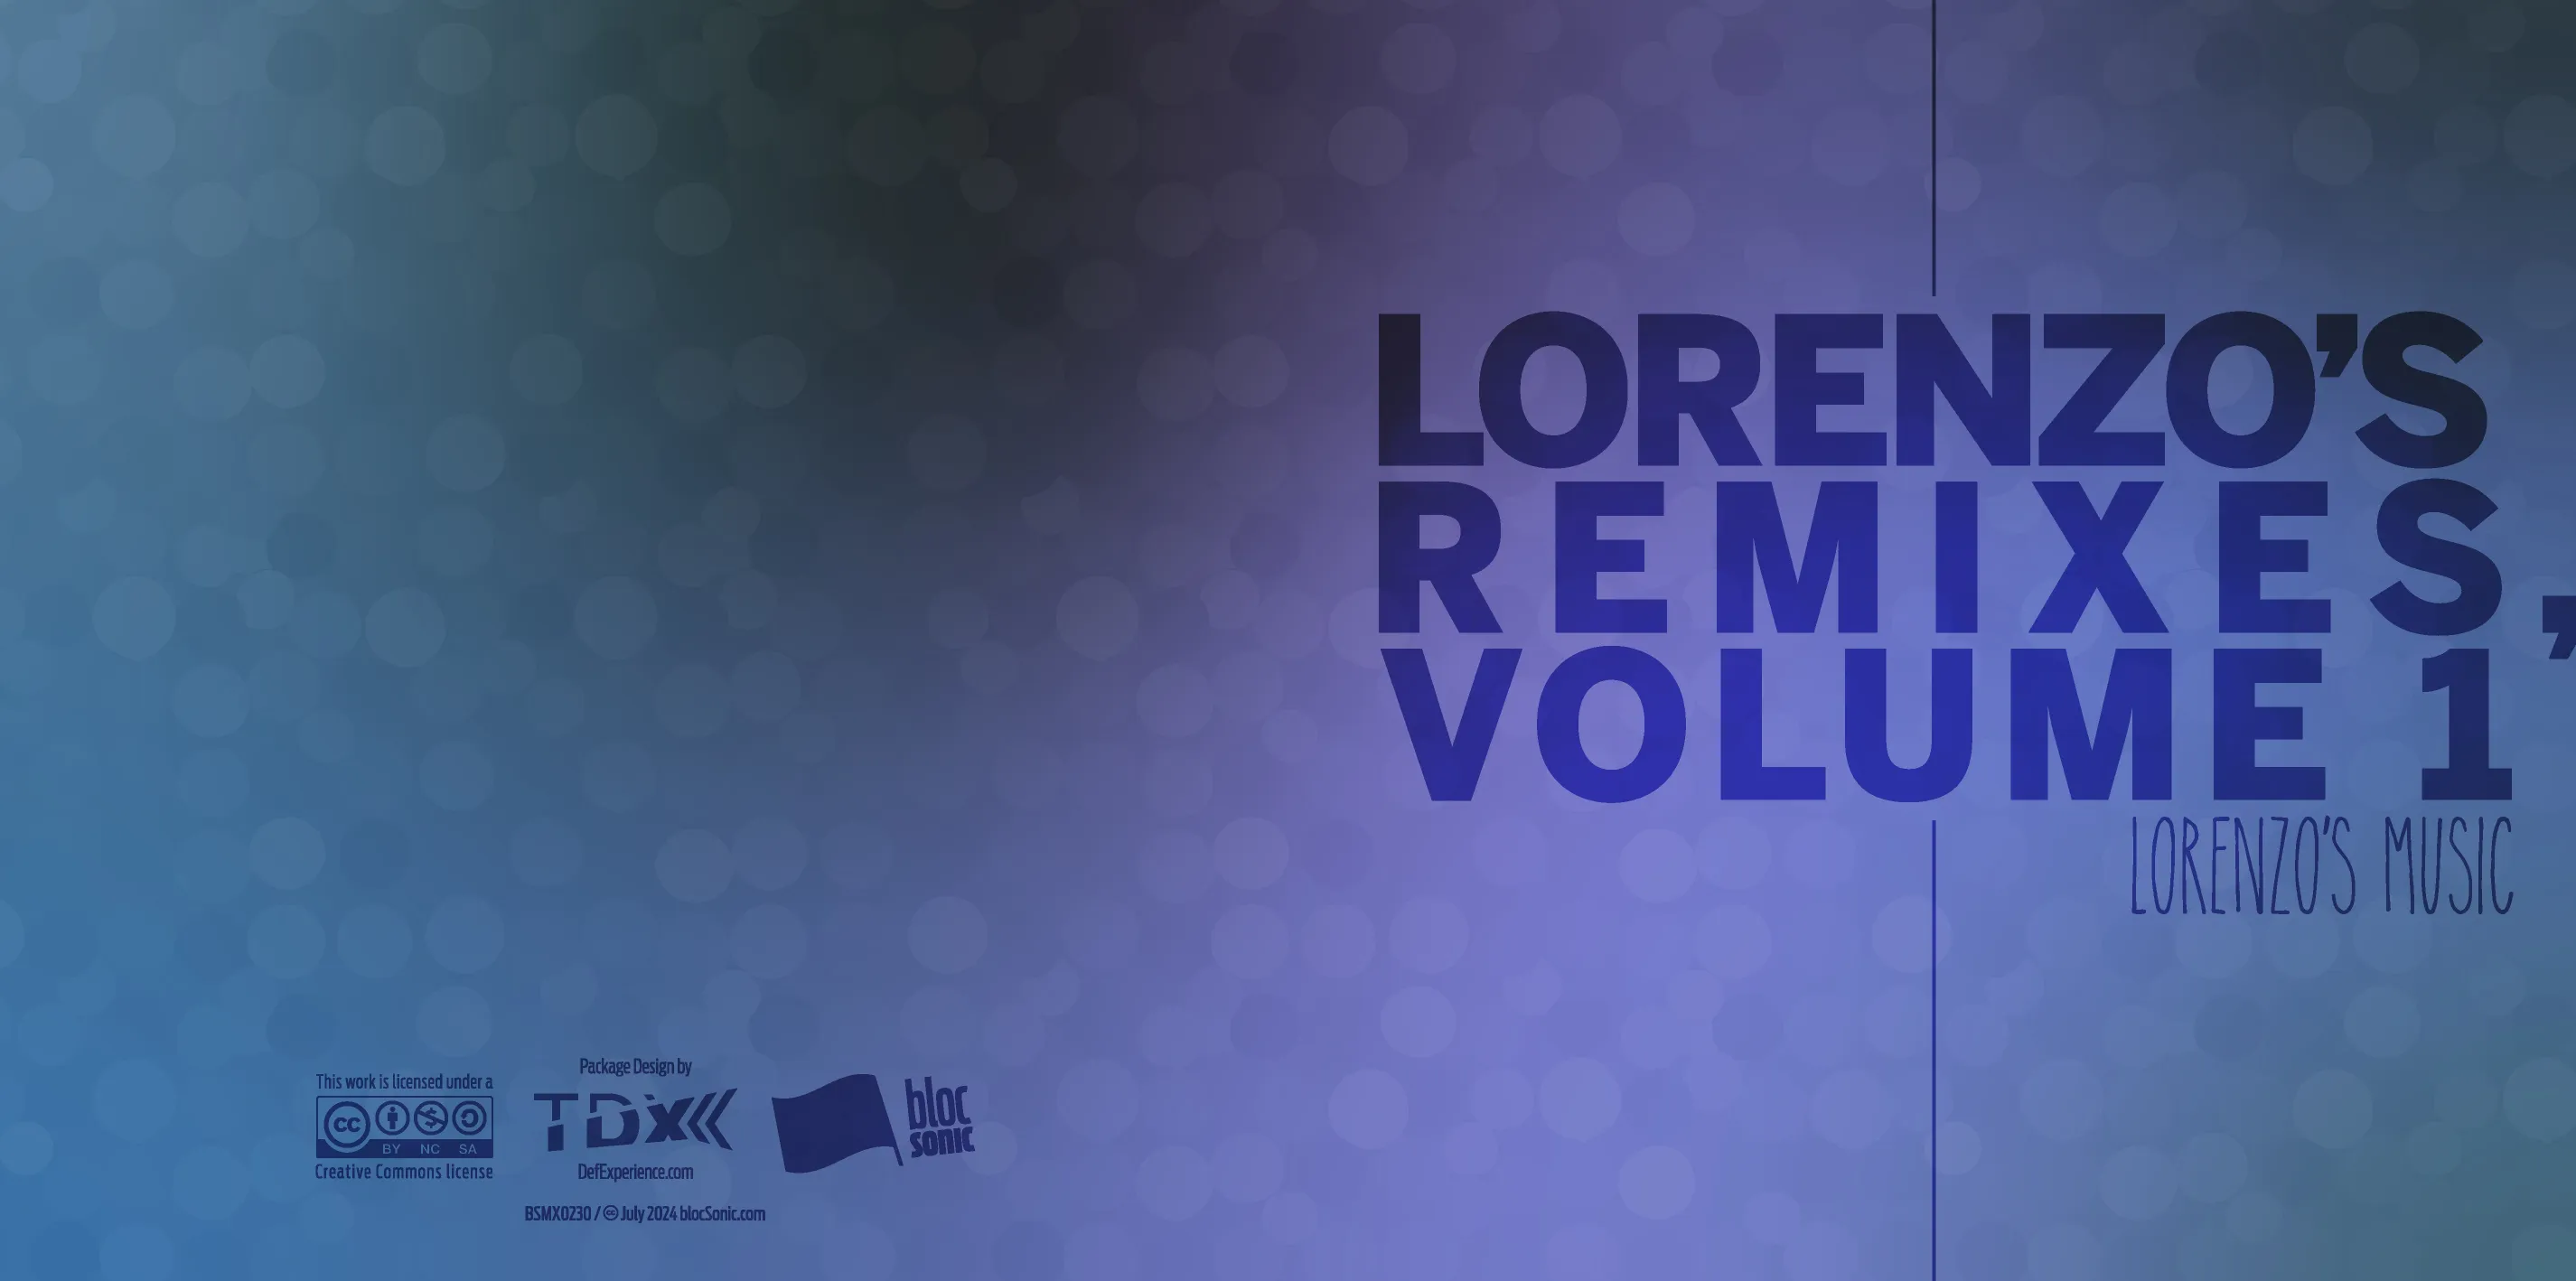 Album insert art for “Lorenzo’s Remixes, Volume 1” by Lorenzo’s Music